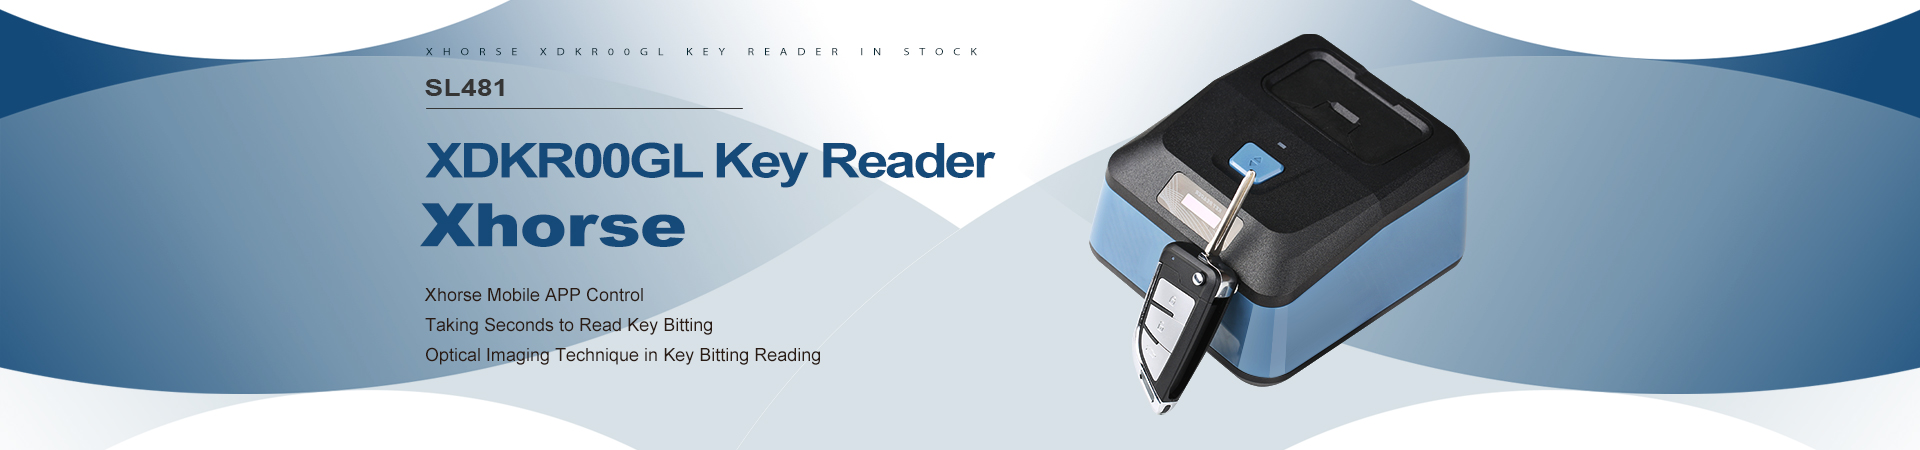 xhorse-key-reader